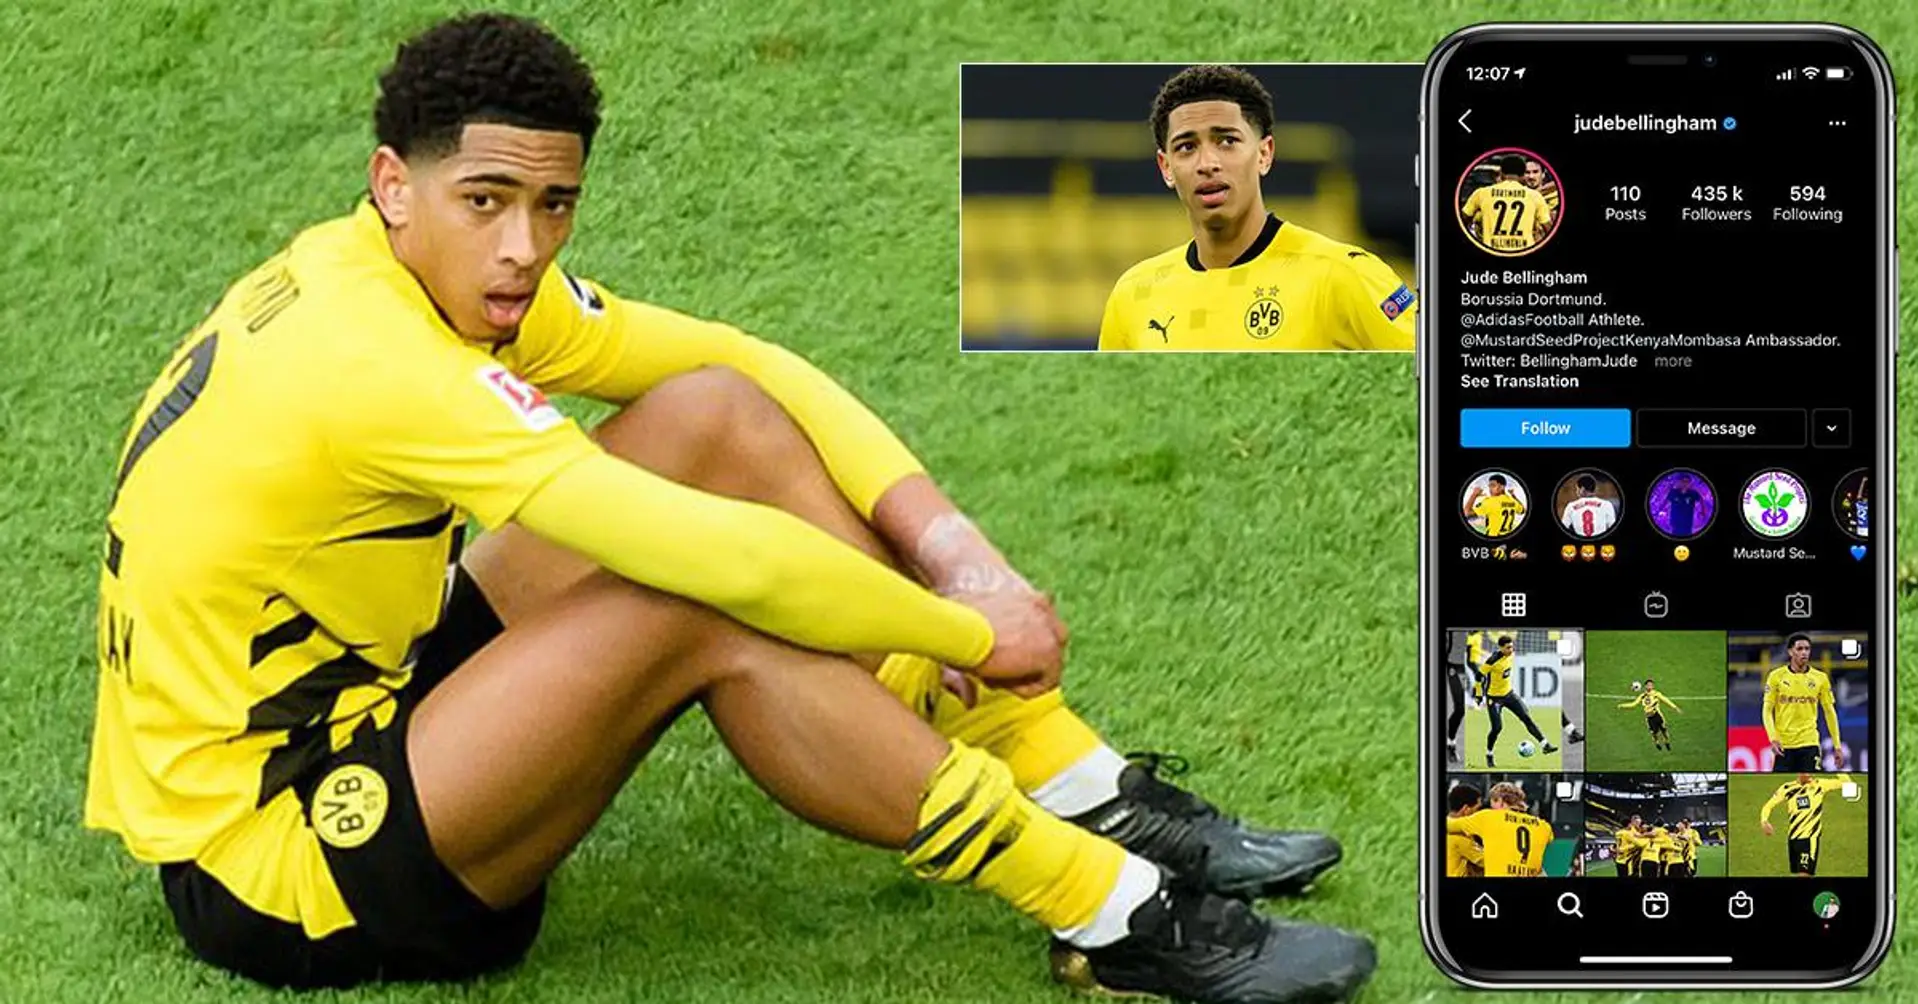 La star de Dortmund, 17 ans, Jude Bellingham partage un message horrible qu'il a reçu sur Instagram